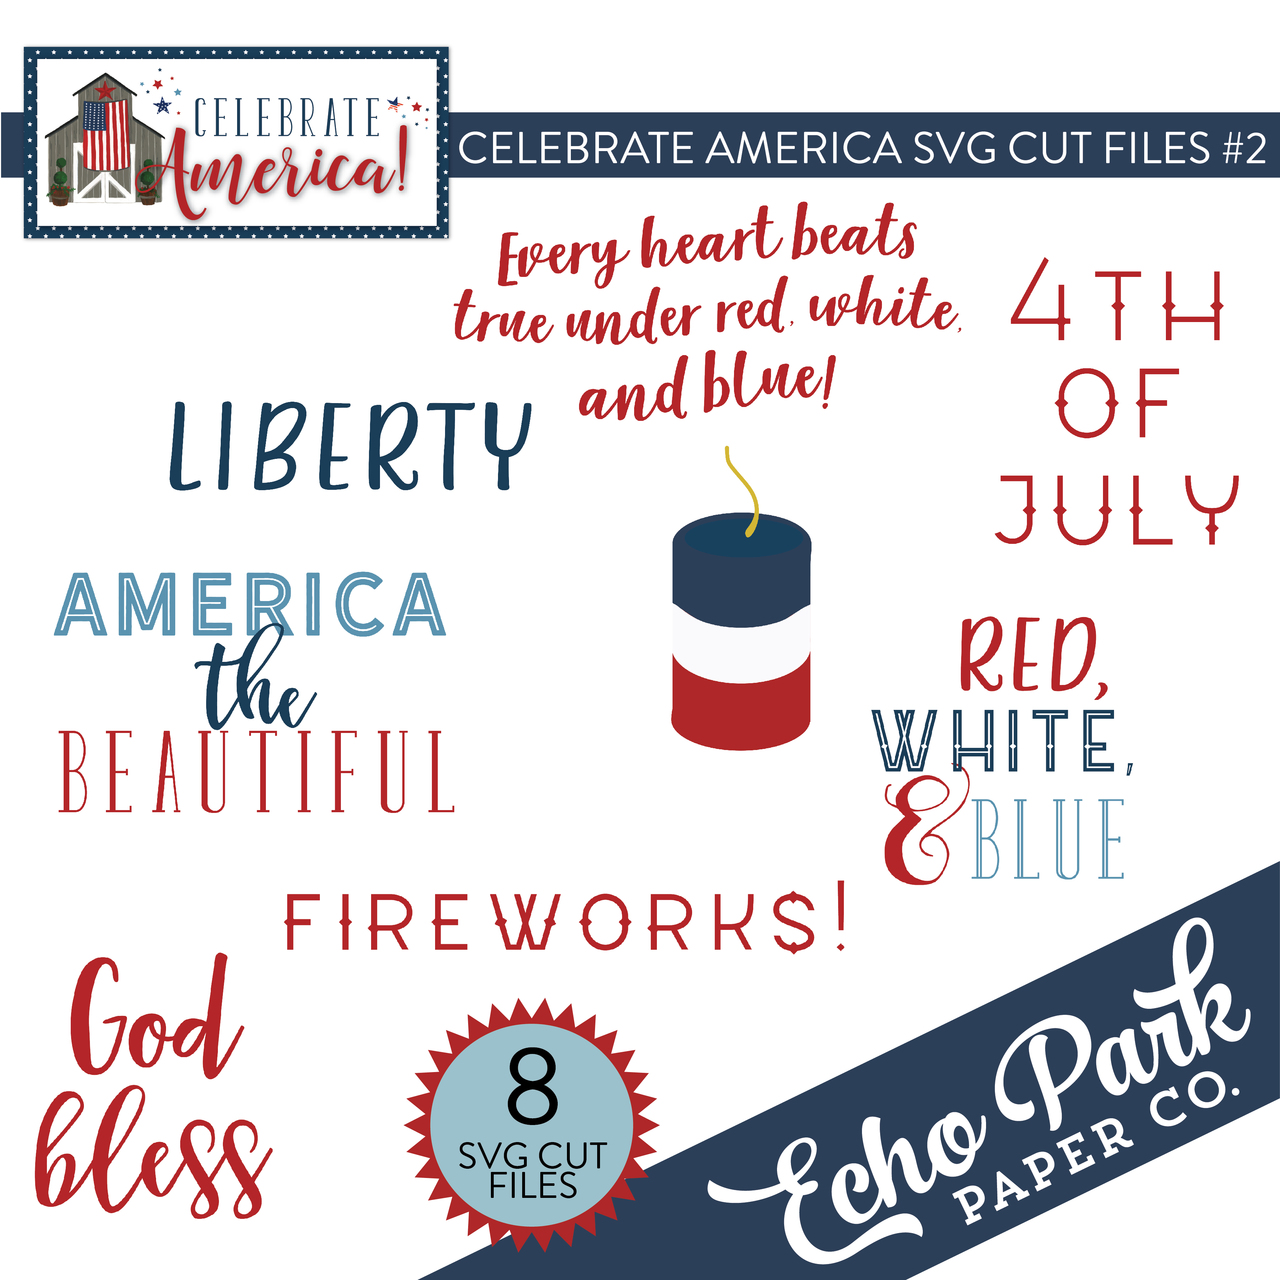 Celebrate America SVG Cut Files #2